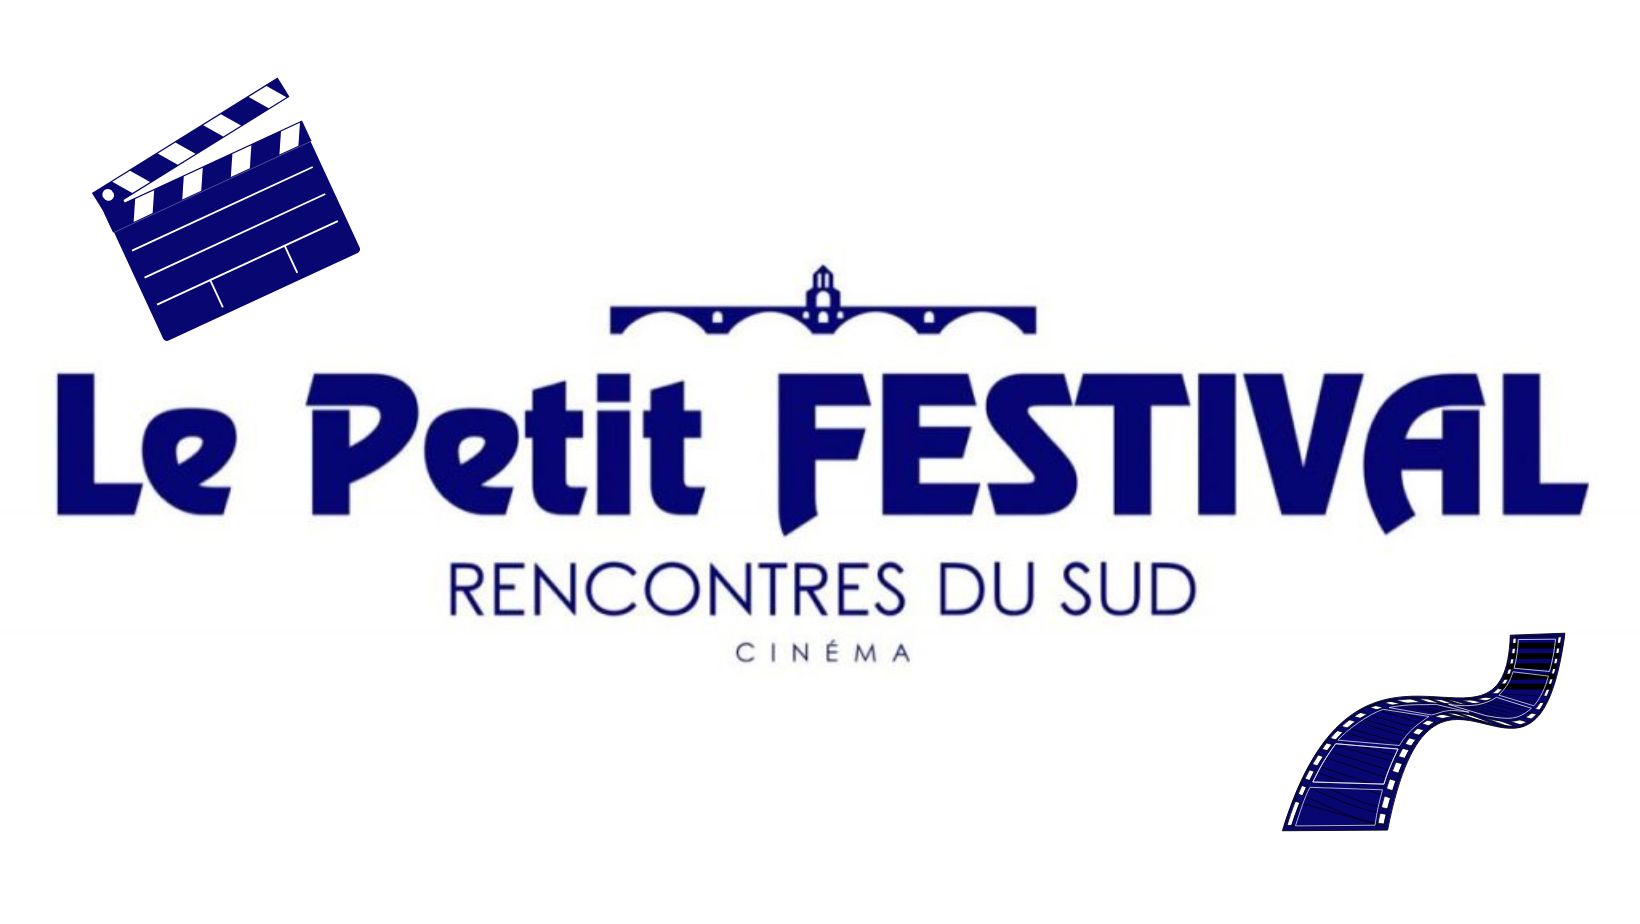 You are currently viewing Le Petit Festival – Rencontre du Sud – Cinéma